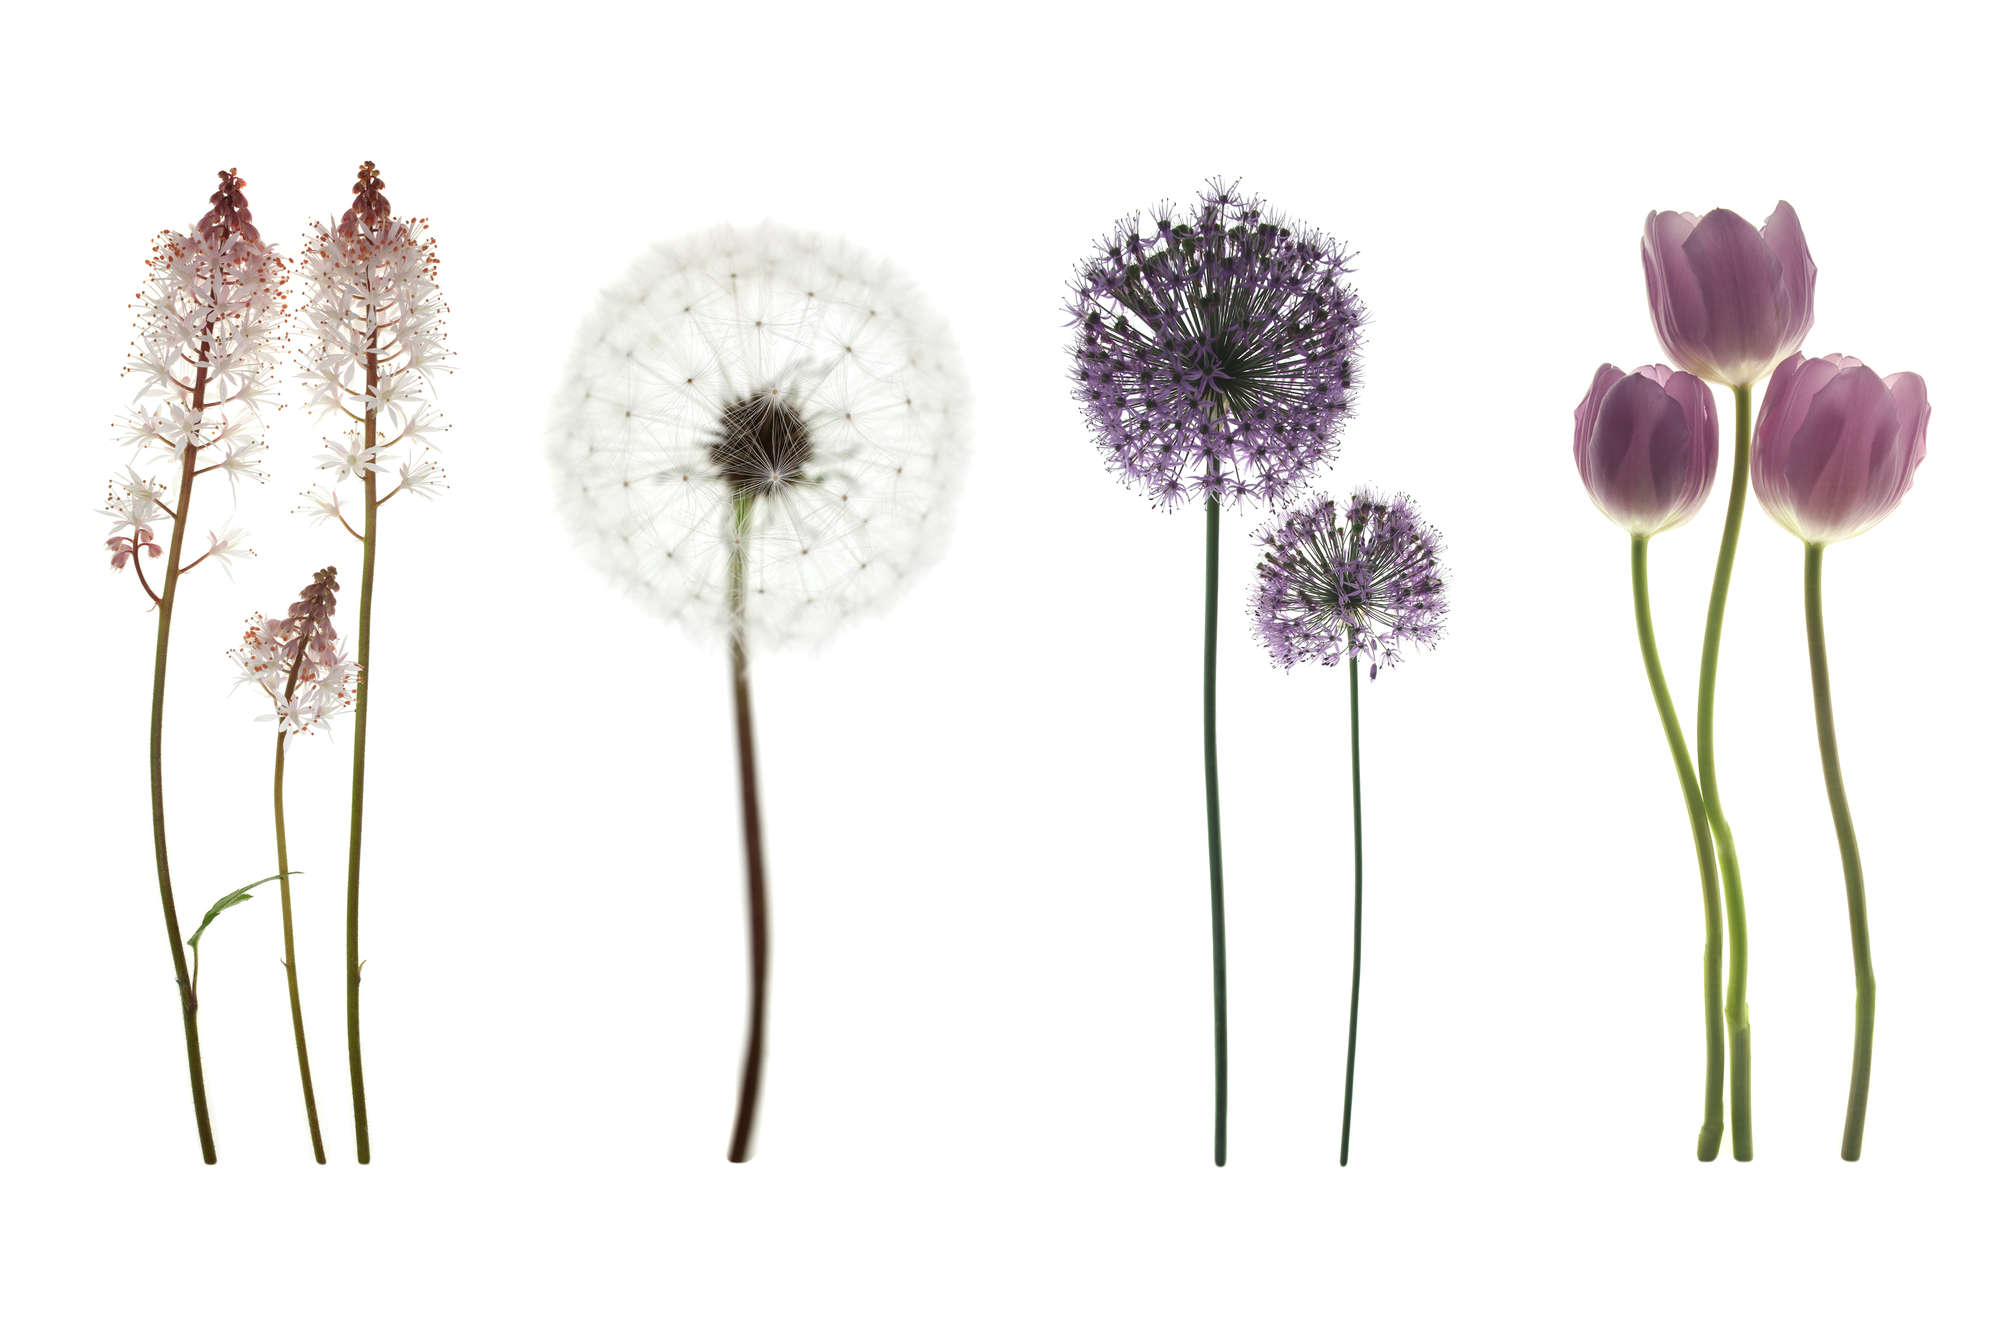             Digital behang met verschillende bloemen - Mat glad vlies
        